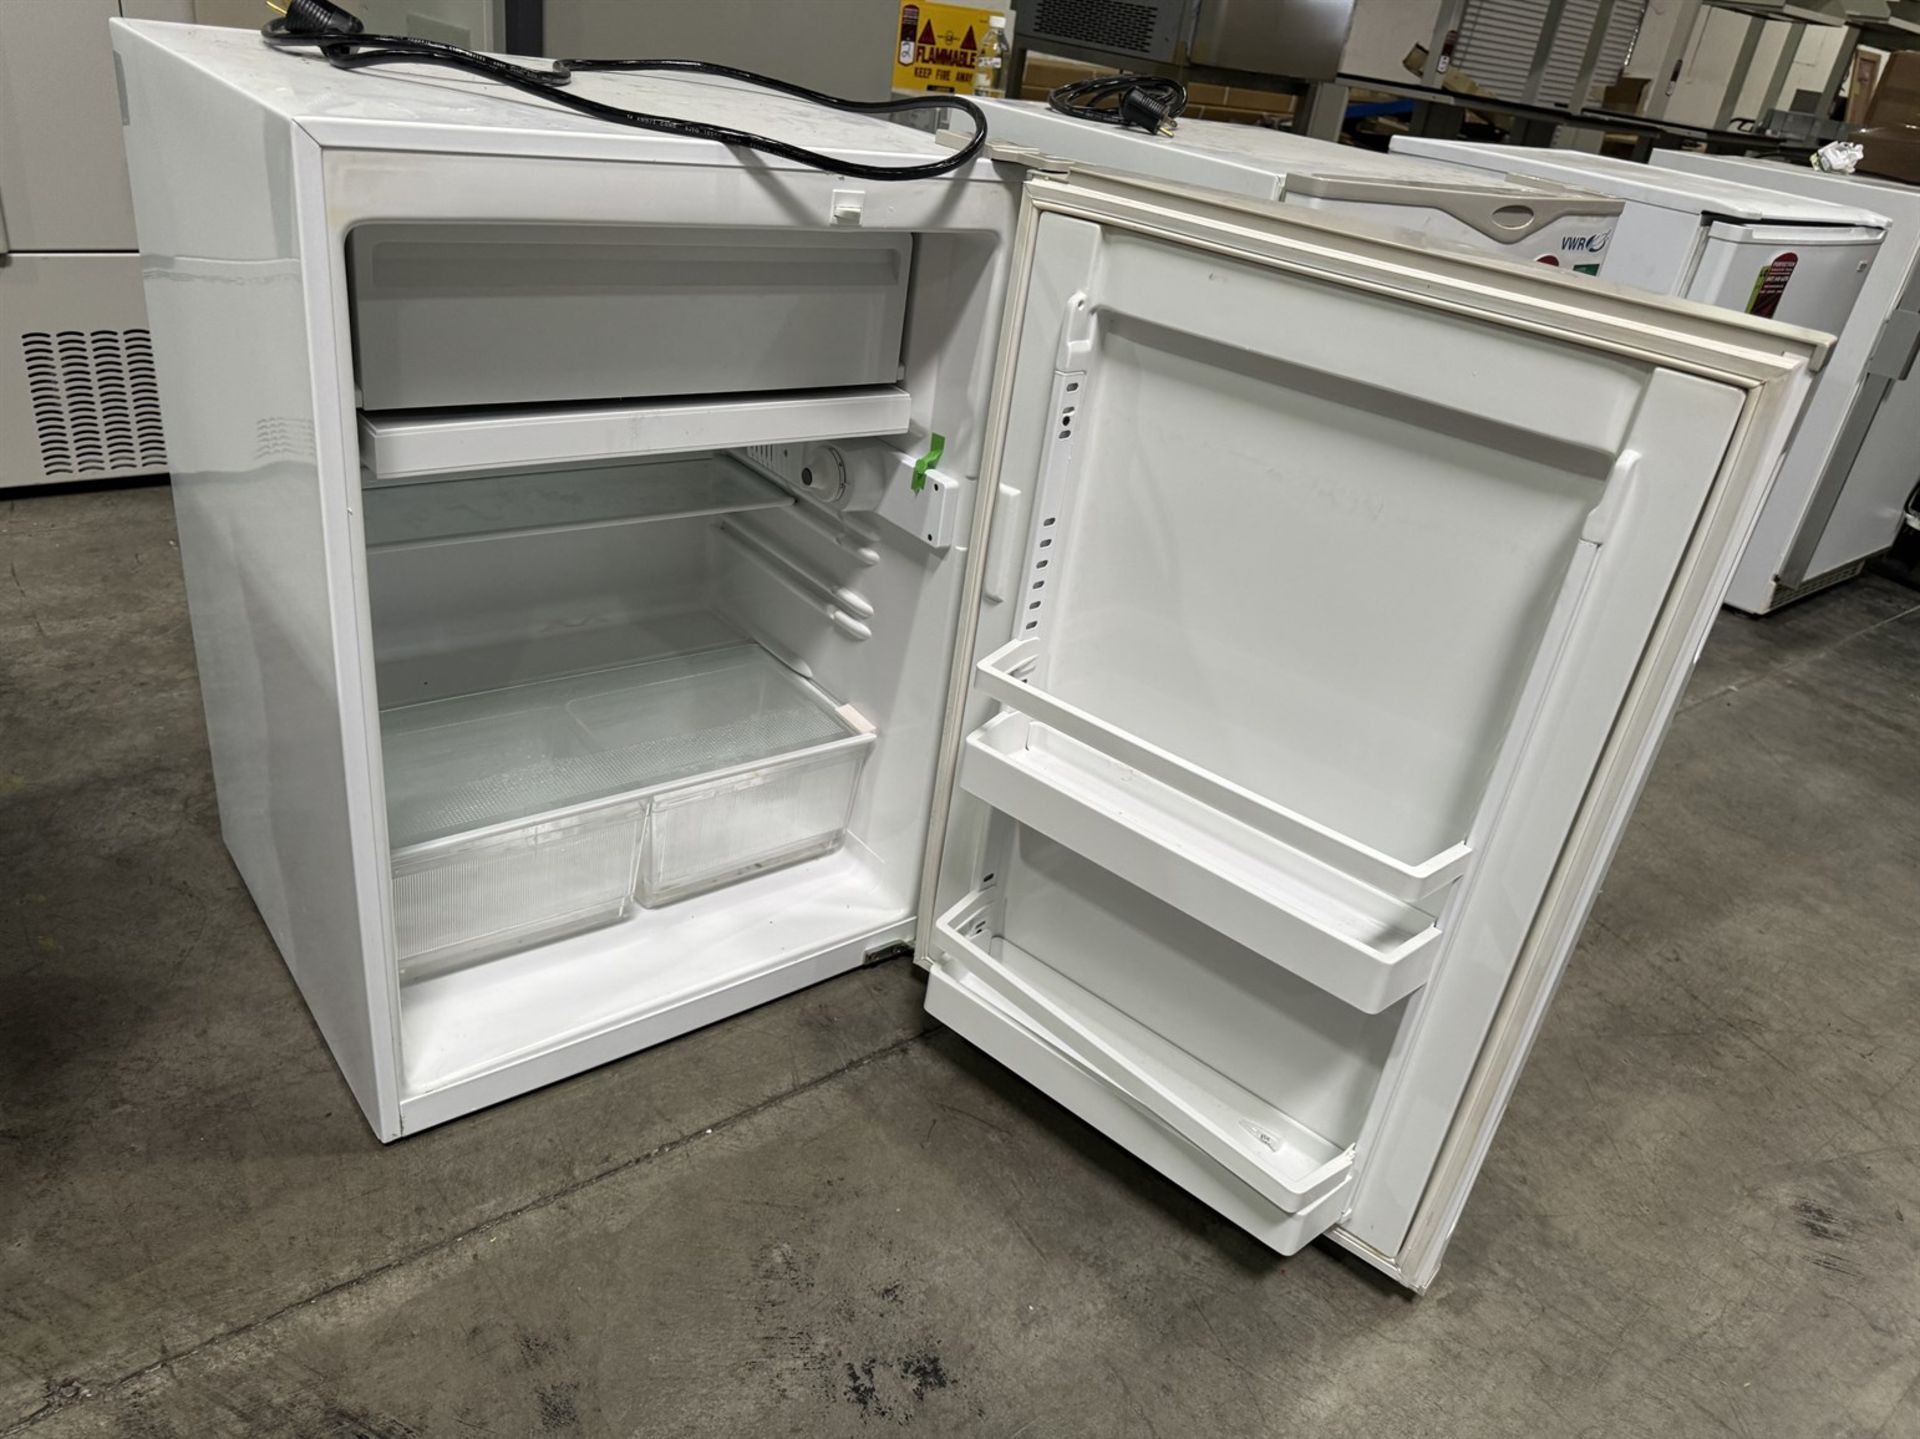 VWR KENDRO LAB R406GA15 Lab Refrigerator, s/n Y12N-603891-YN - Image 2 of 4